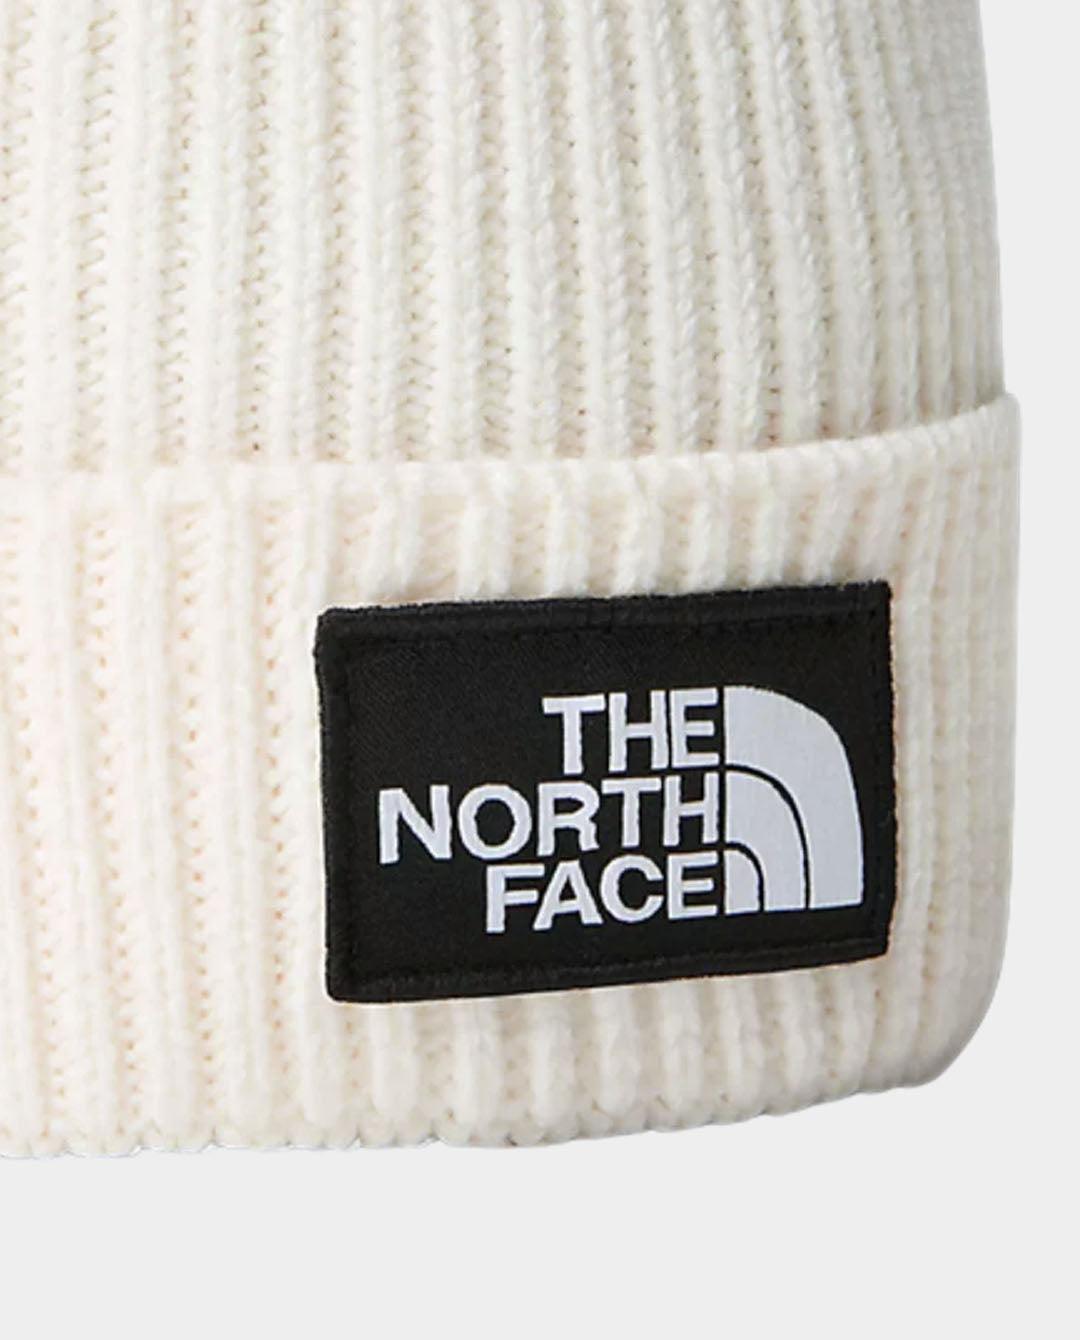 The North Face - TNF Logo Box Cuff Beanie - Gardenia White Beanie The North Face   